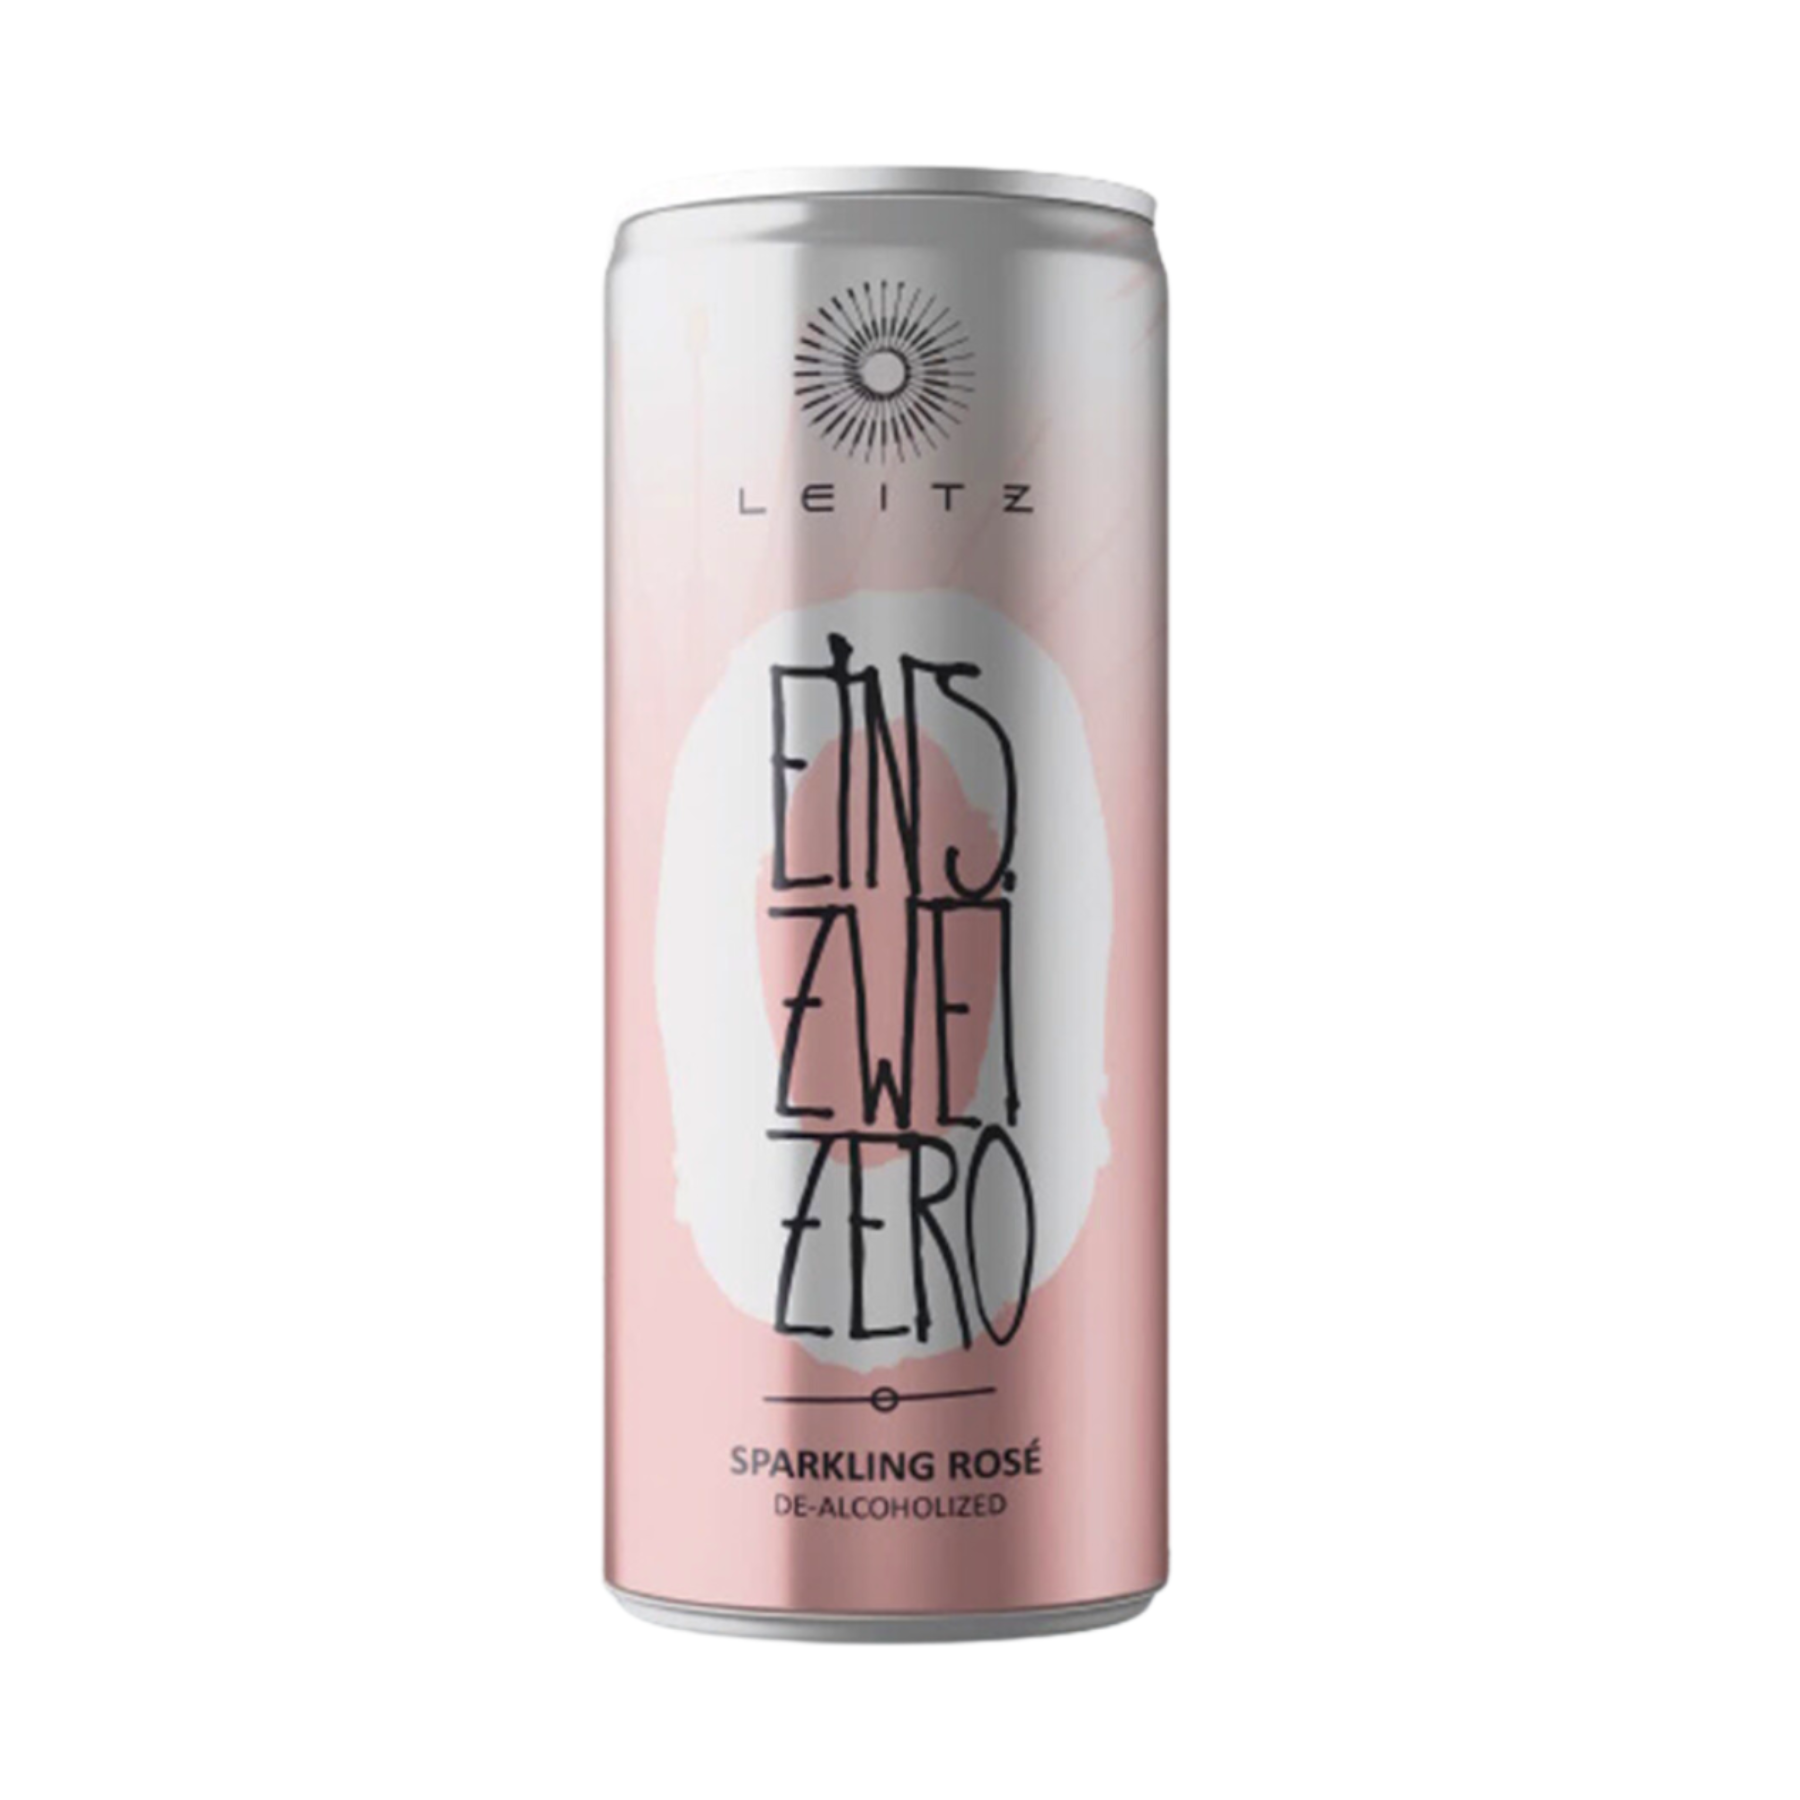 Leitz Eins-Zwei-Zero Sparkling Rosé 250ml | Non-Alcoholic